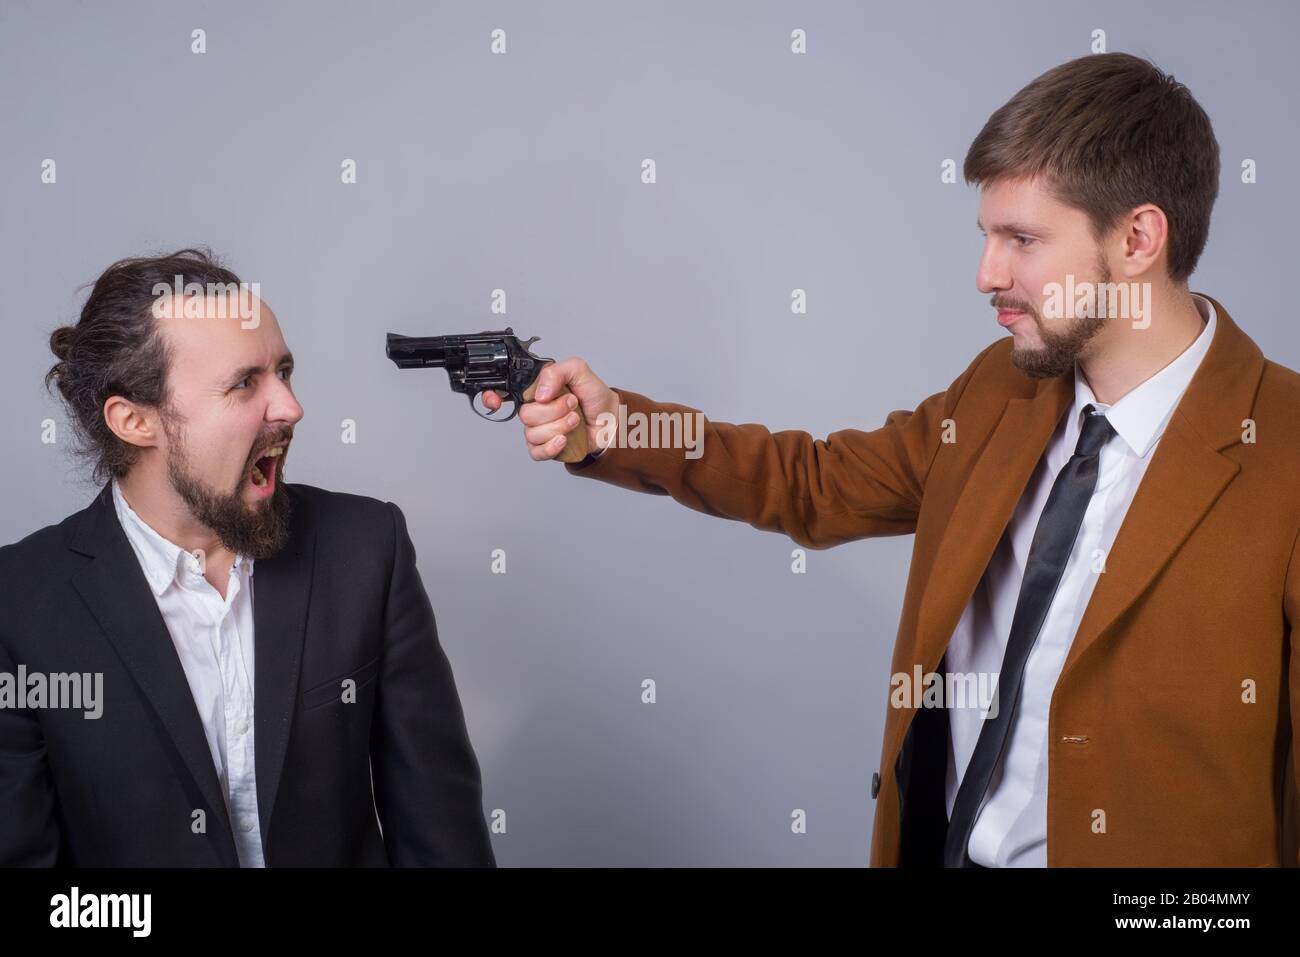 Ritratto di due giovani in abiti da lavoro. L'uomo punta la pistola ad un altro uomo, minacciandolo, e il secondo lo guarda in fright e scre Foto Stock